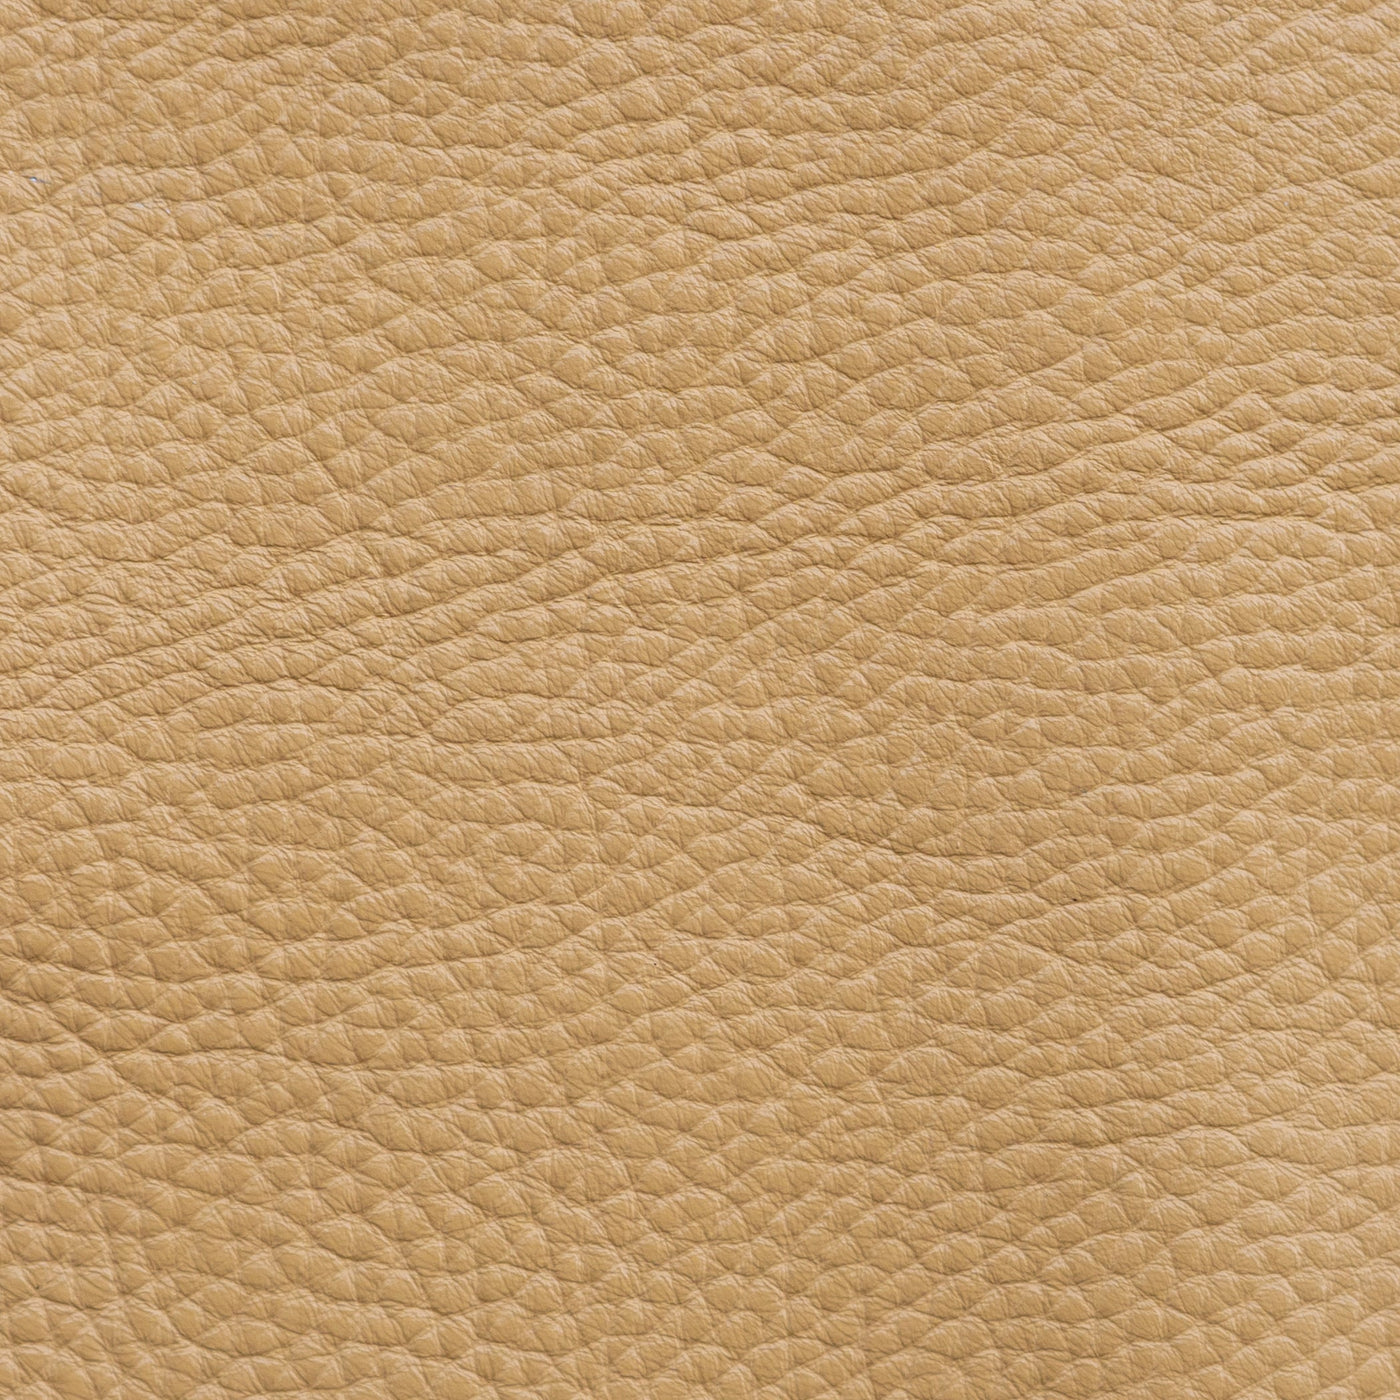 Premium Leather - Retro Modern Designs